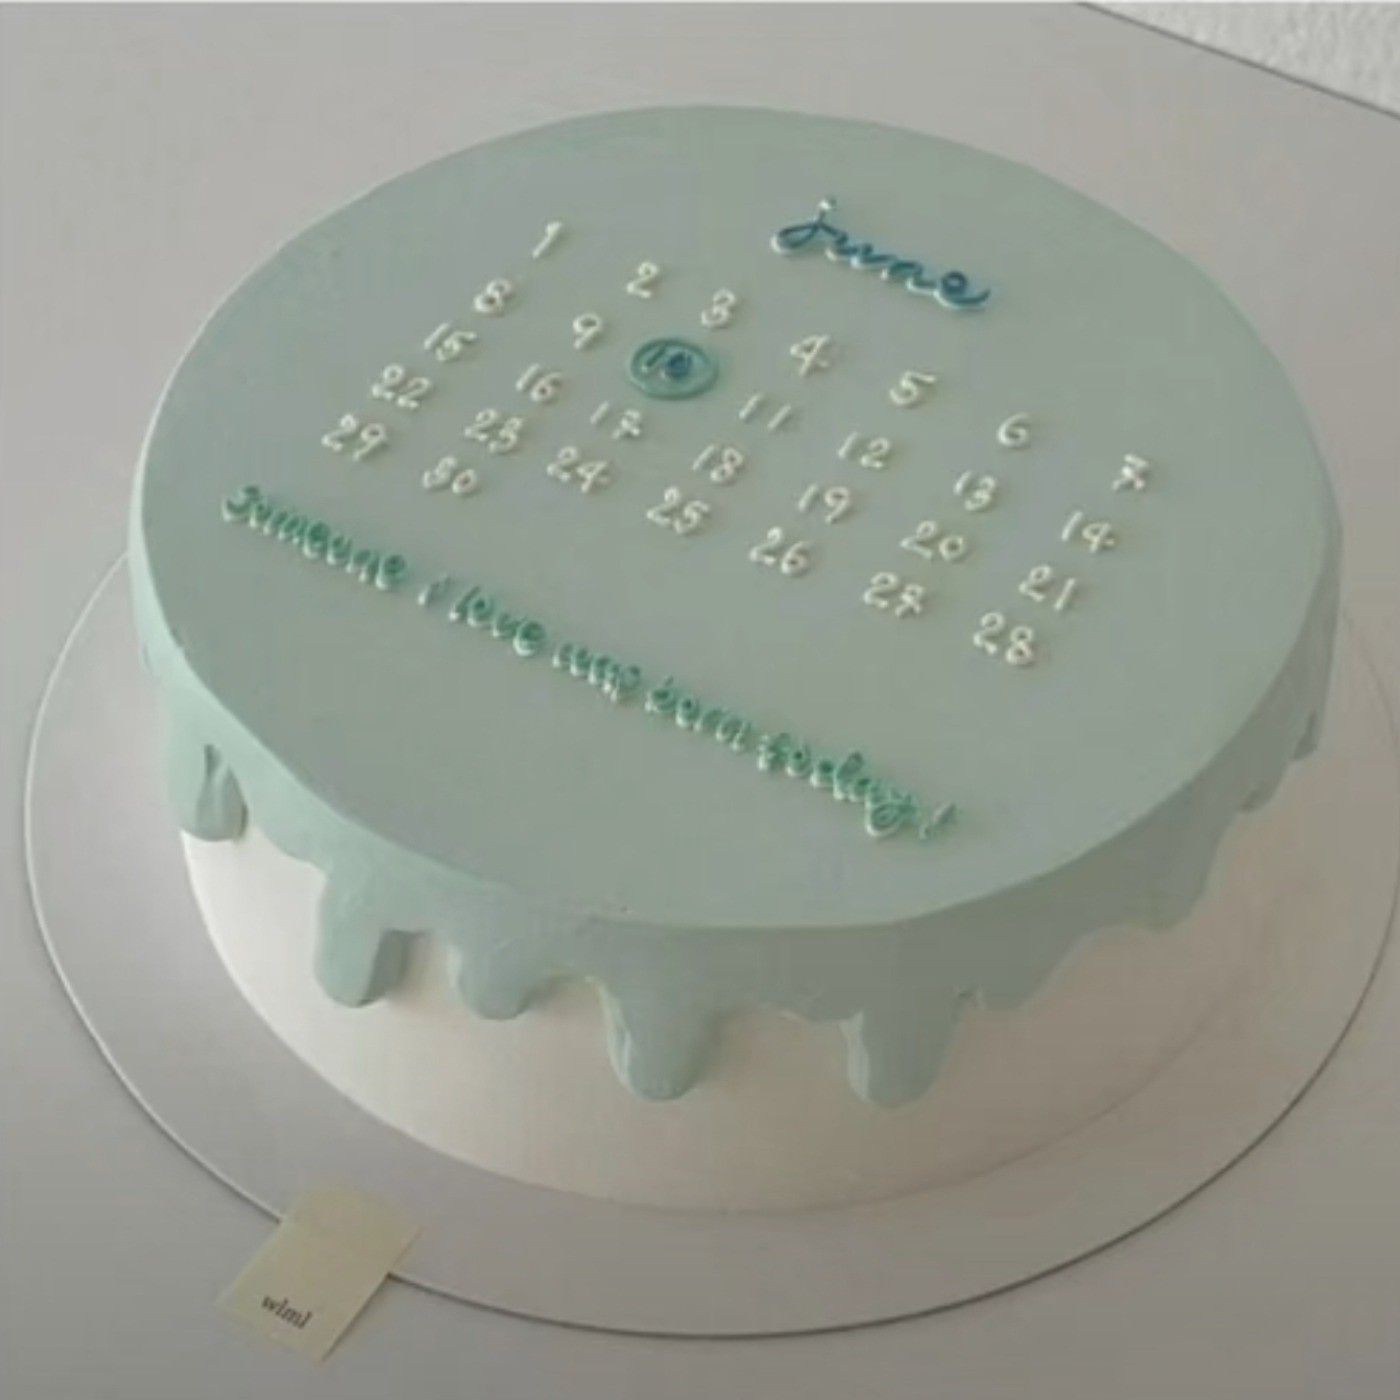 ایده ی کیک تولد با رنگ سبز روشن ...💚